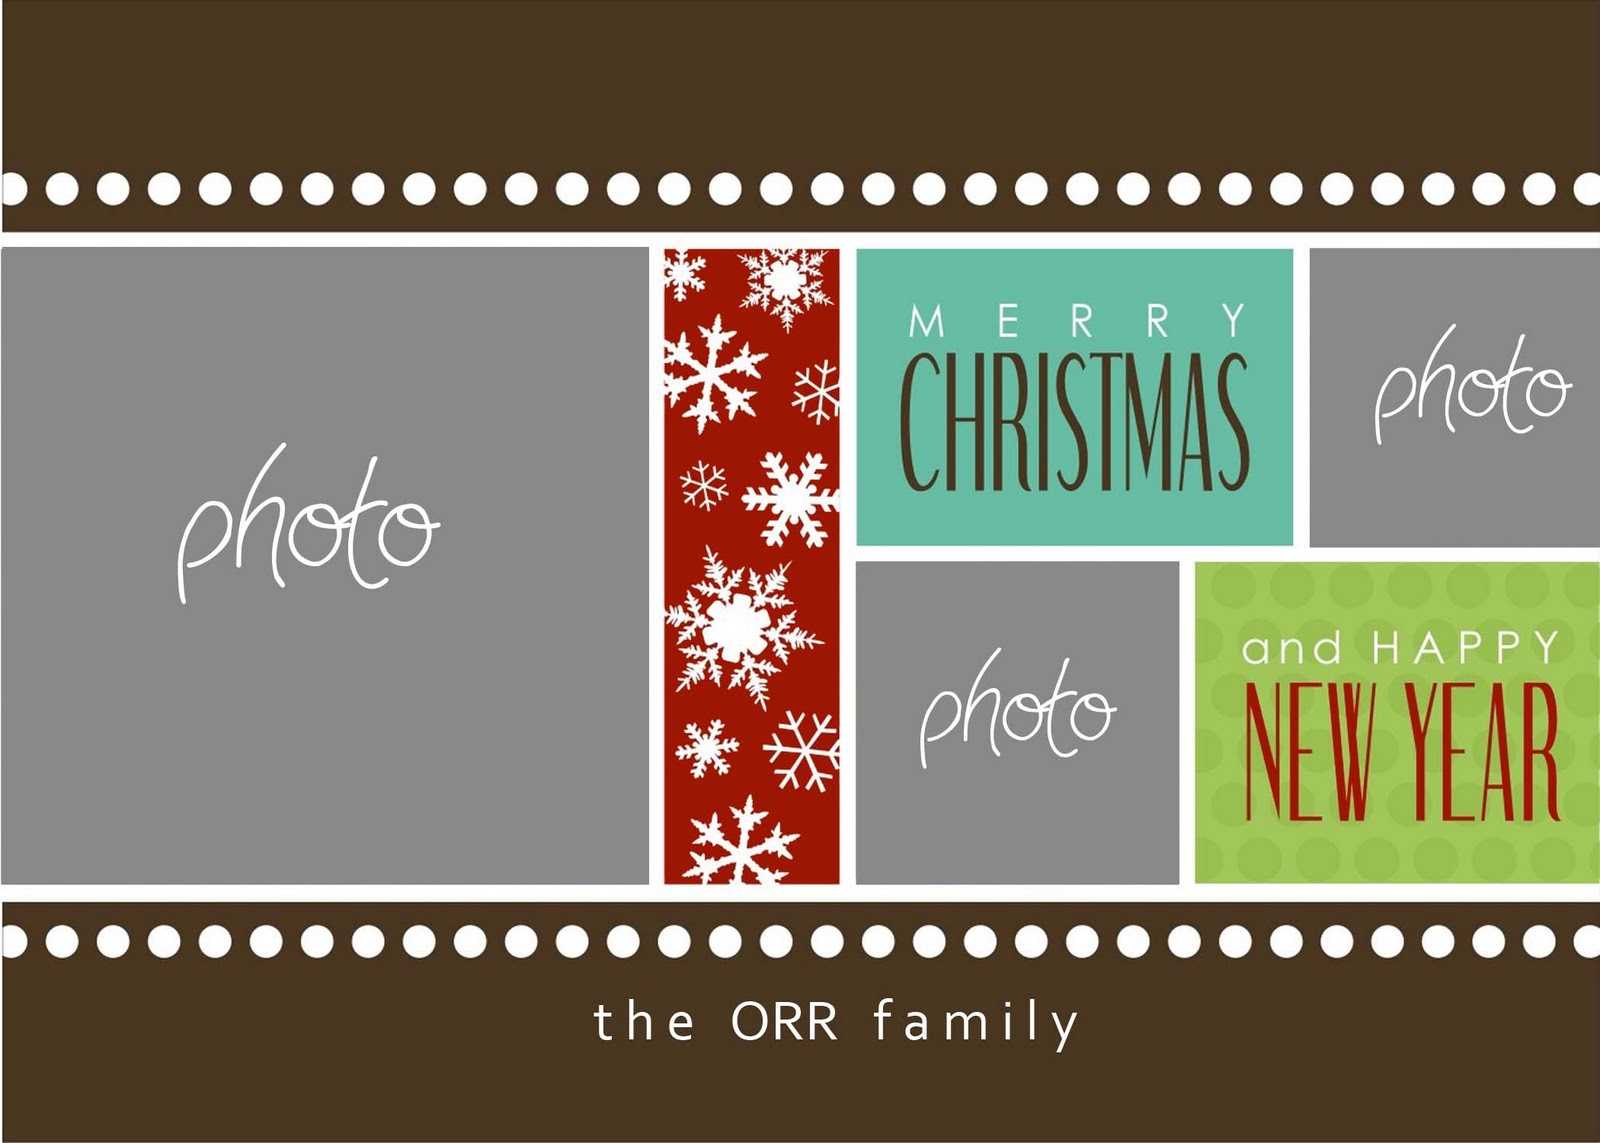 Christmas Cards Templates Photoshop ] - Christmas Card For Christmas Photo Card Templates Photoshop